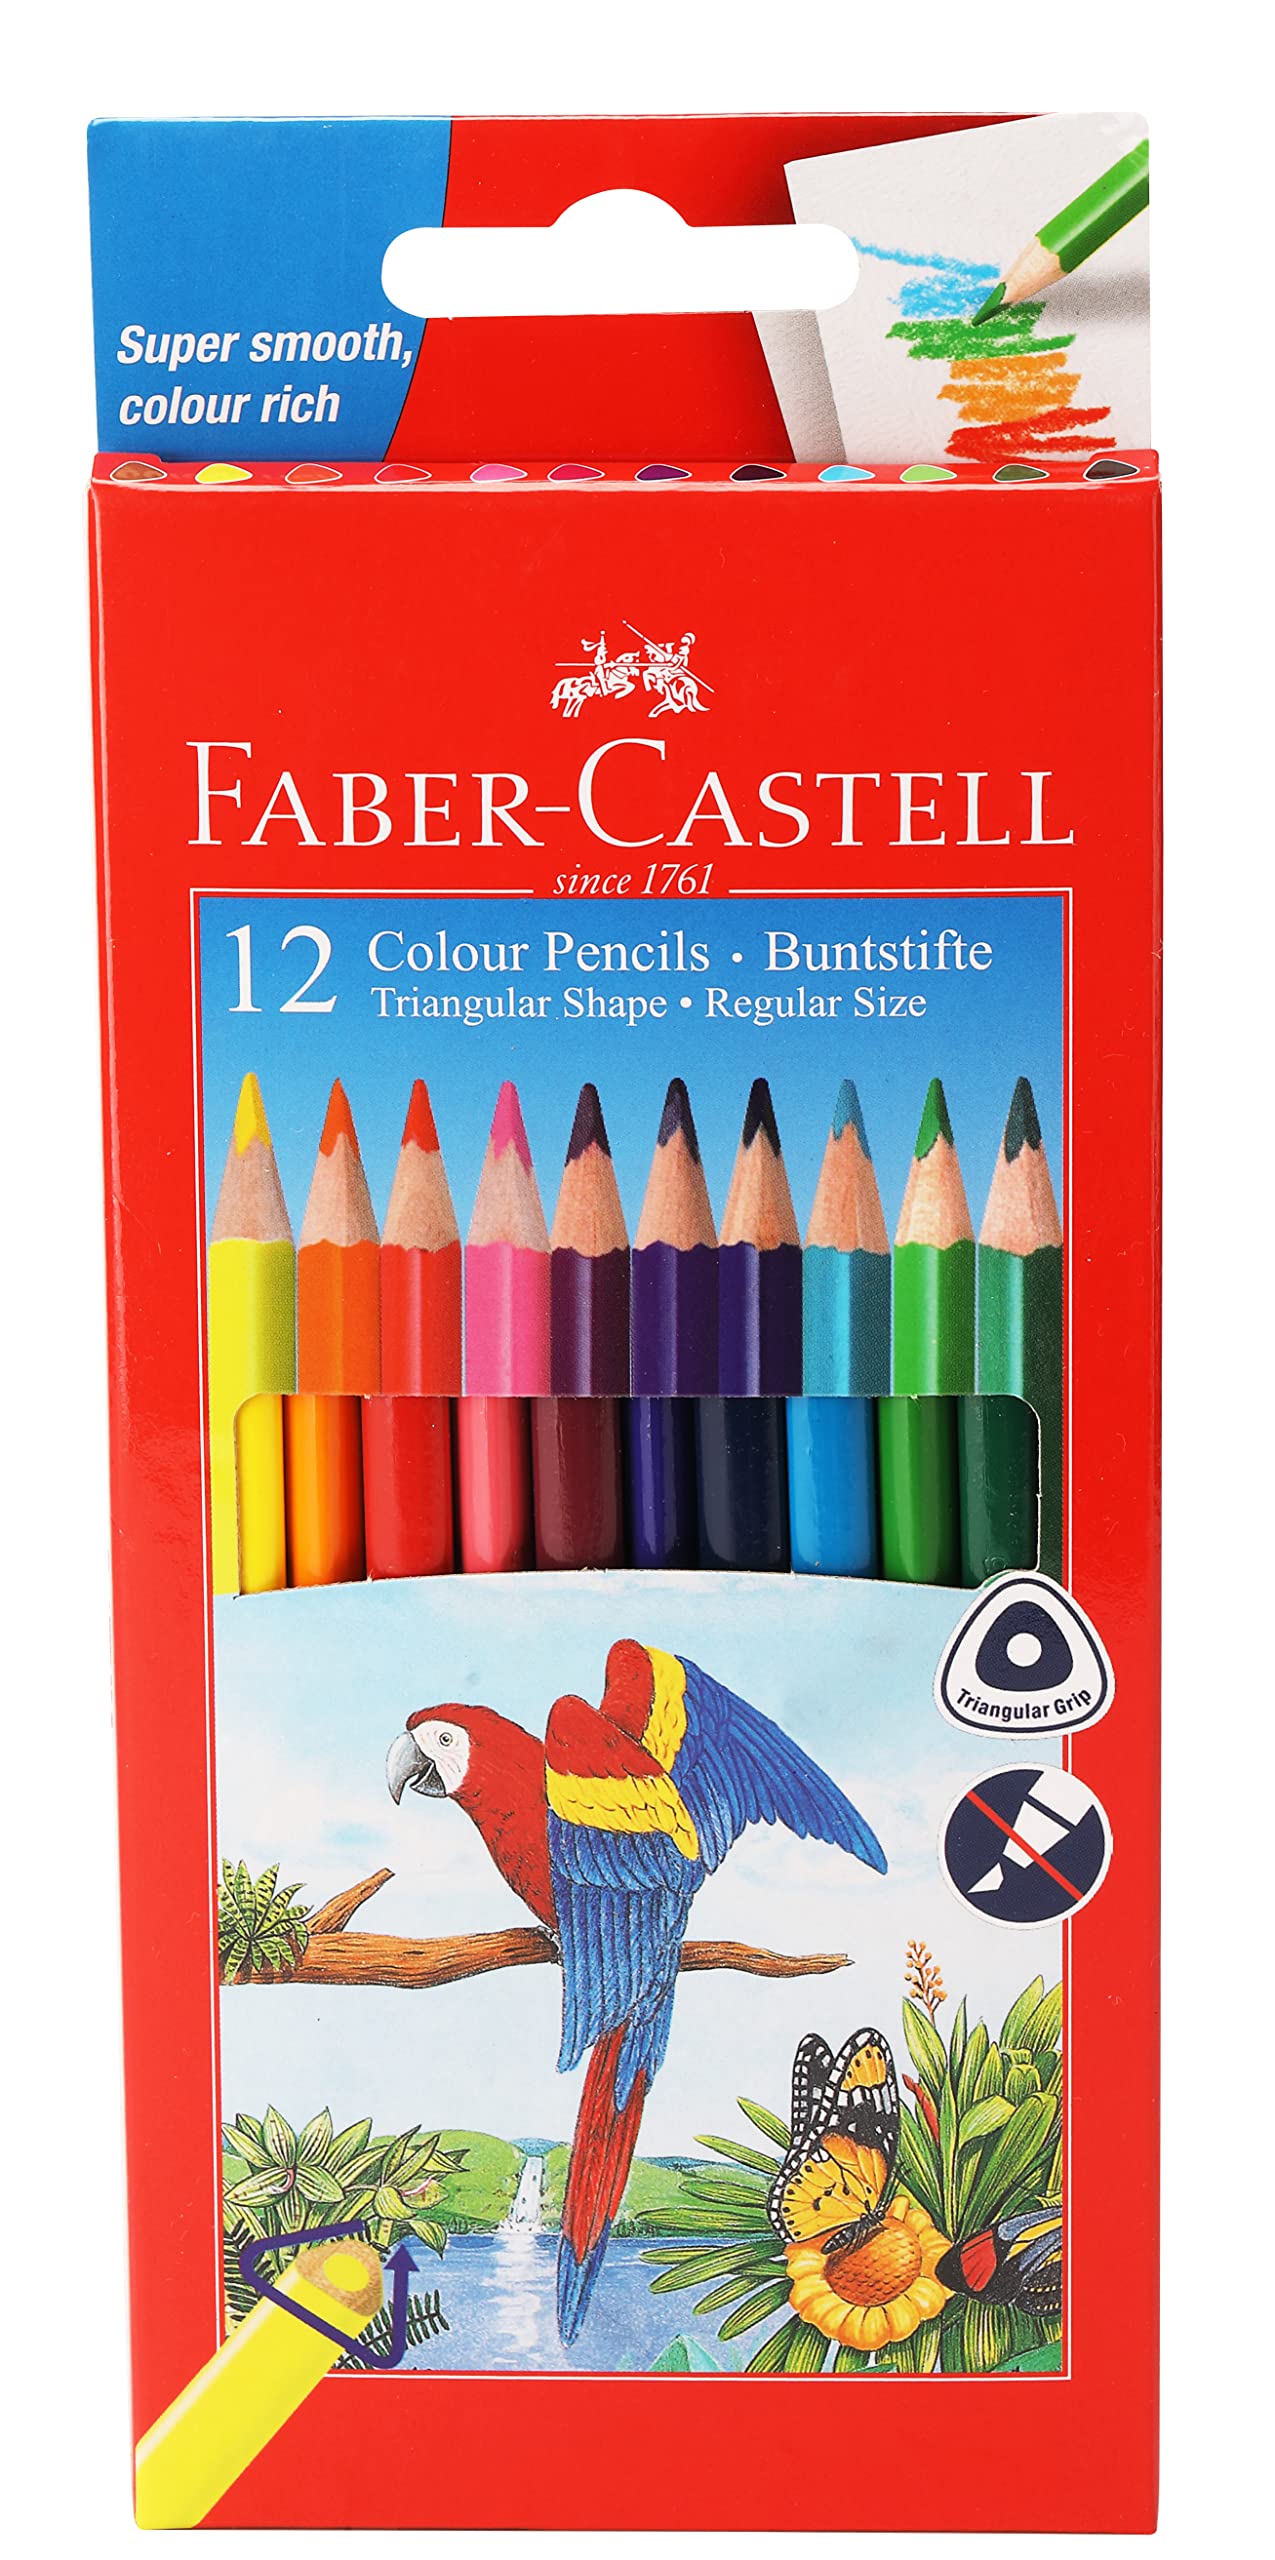 colour pencil images